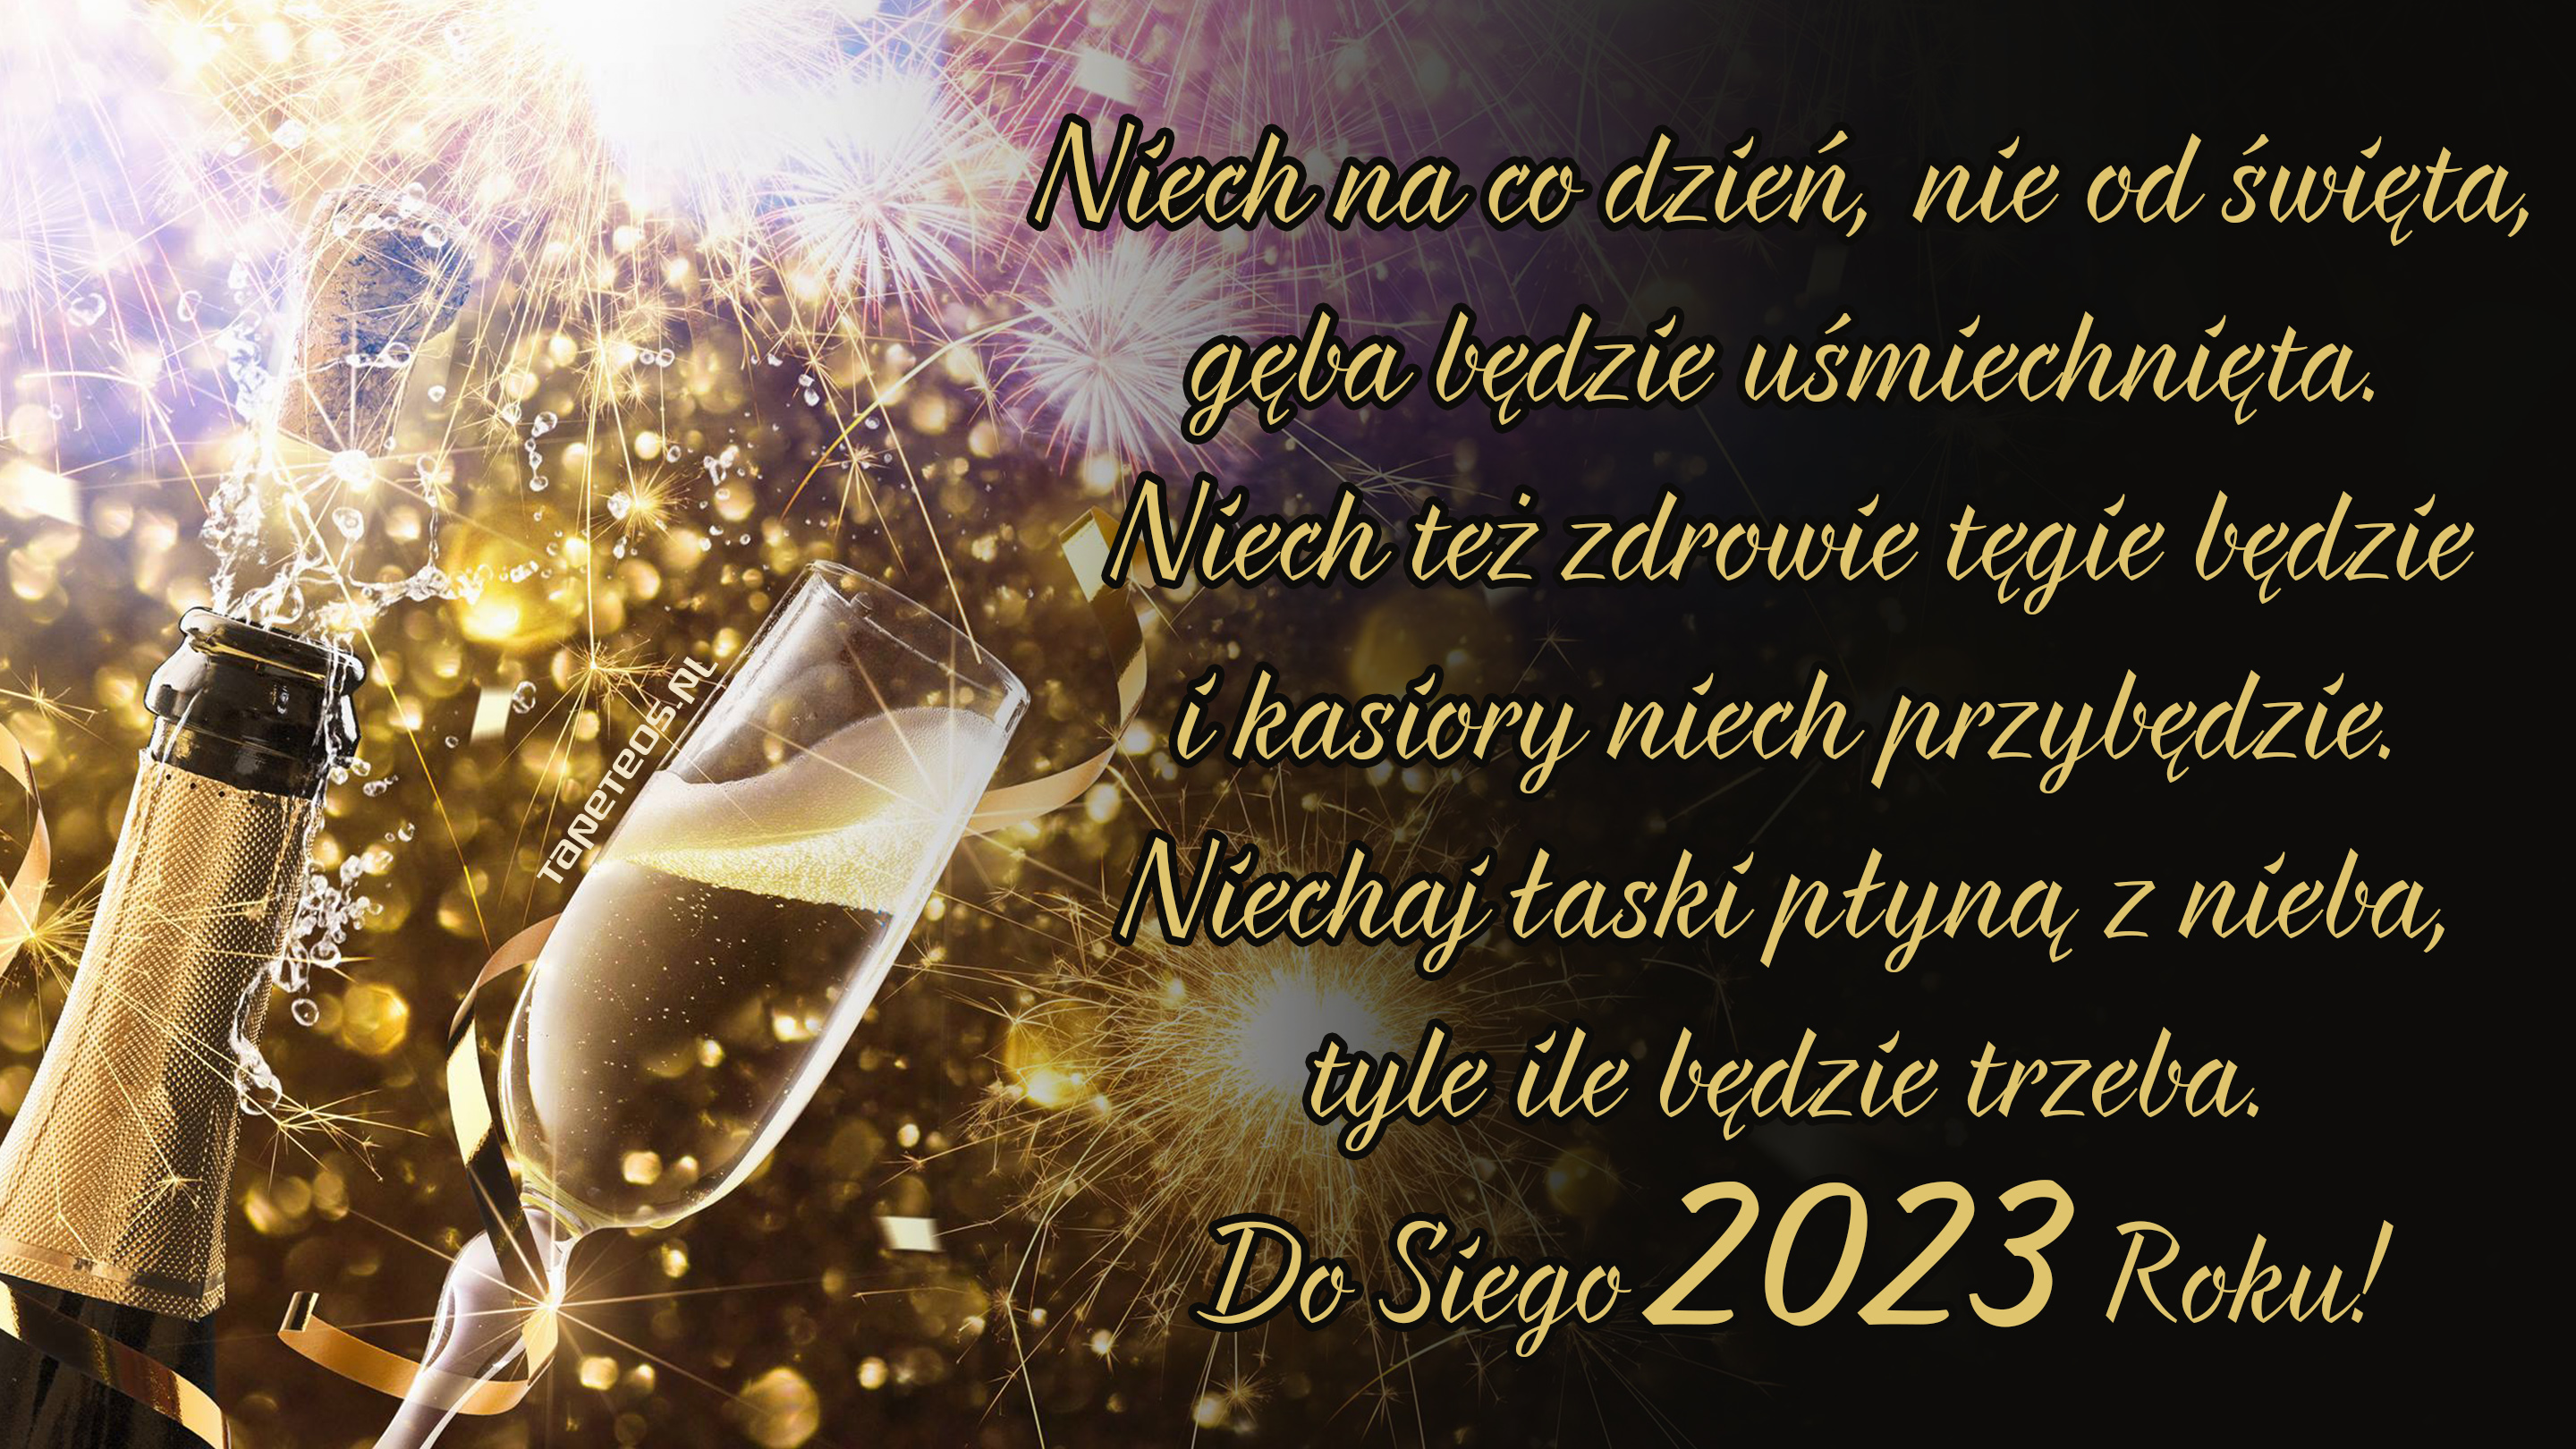 Sylwester, Nowy Rok, New Year 1182 Szampan, Kieliszek, Fajerwerki, Zyczenia Noworoczne 2023, Niech na co dzien ...